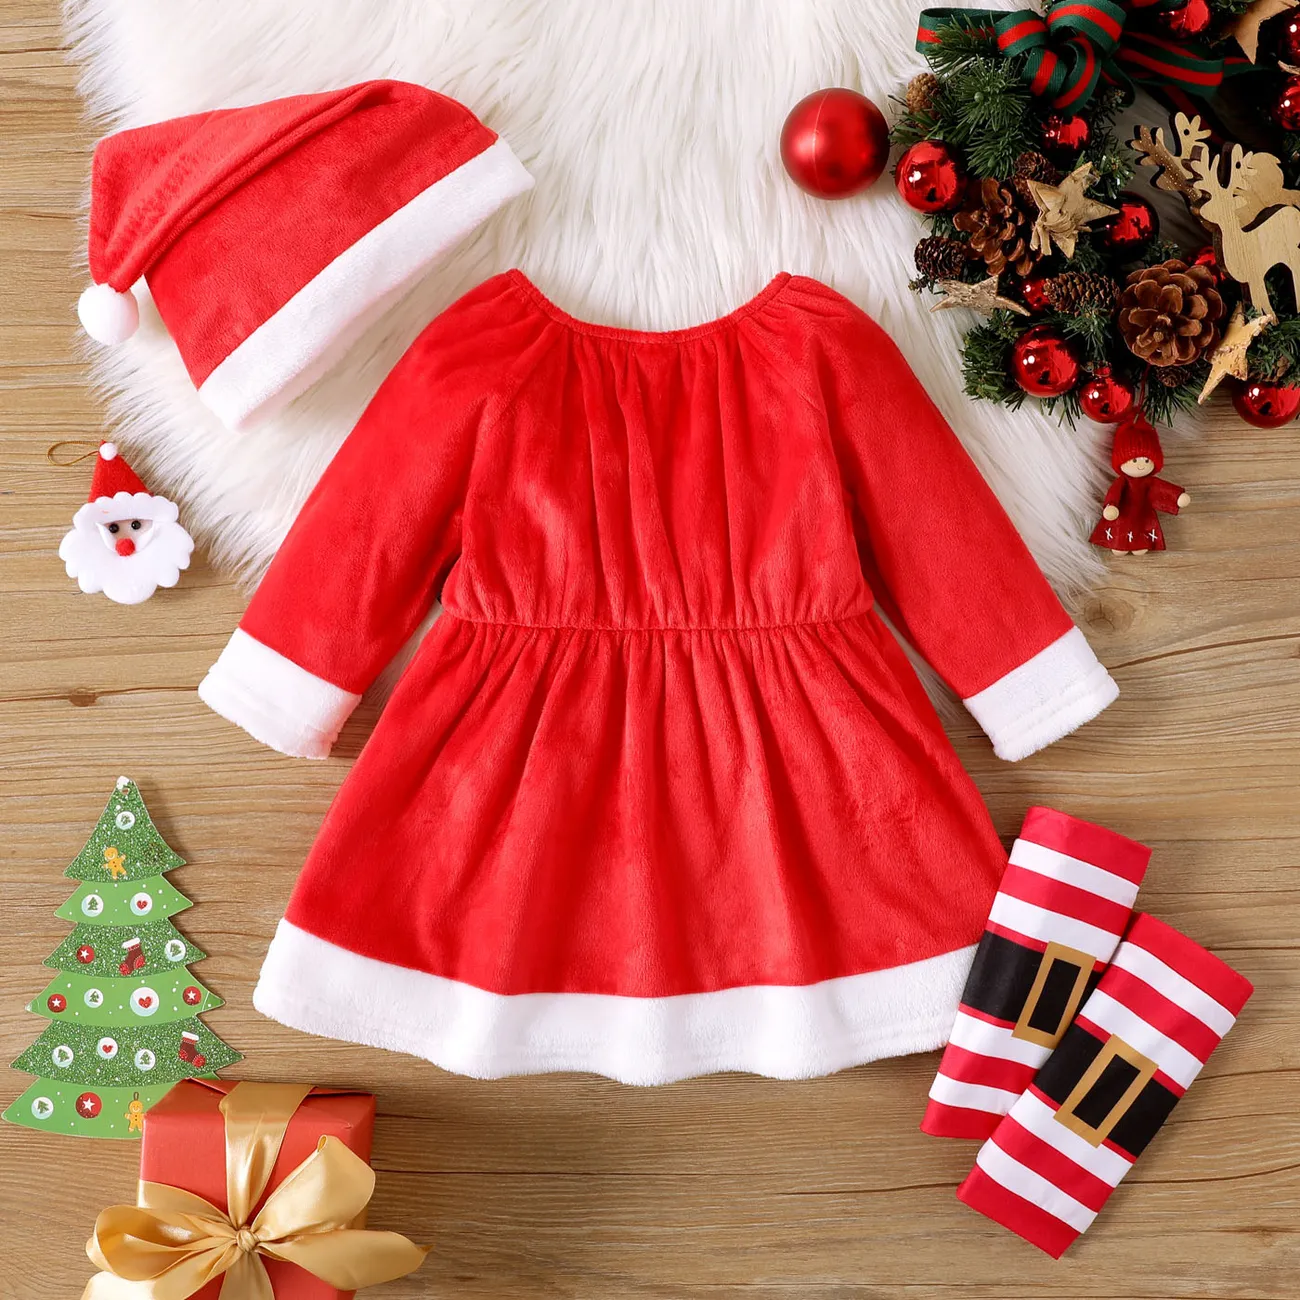 聖誕節 3件 嬰兒 鈕扣 童趣 長袖 套裝裙 紅白 big image 1